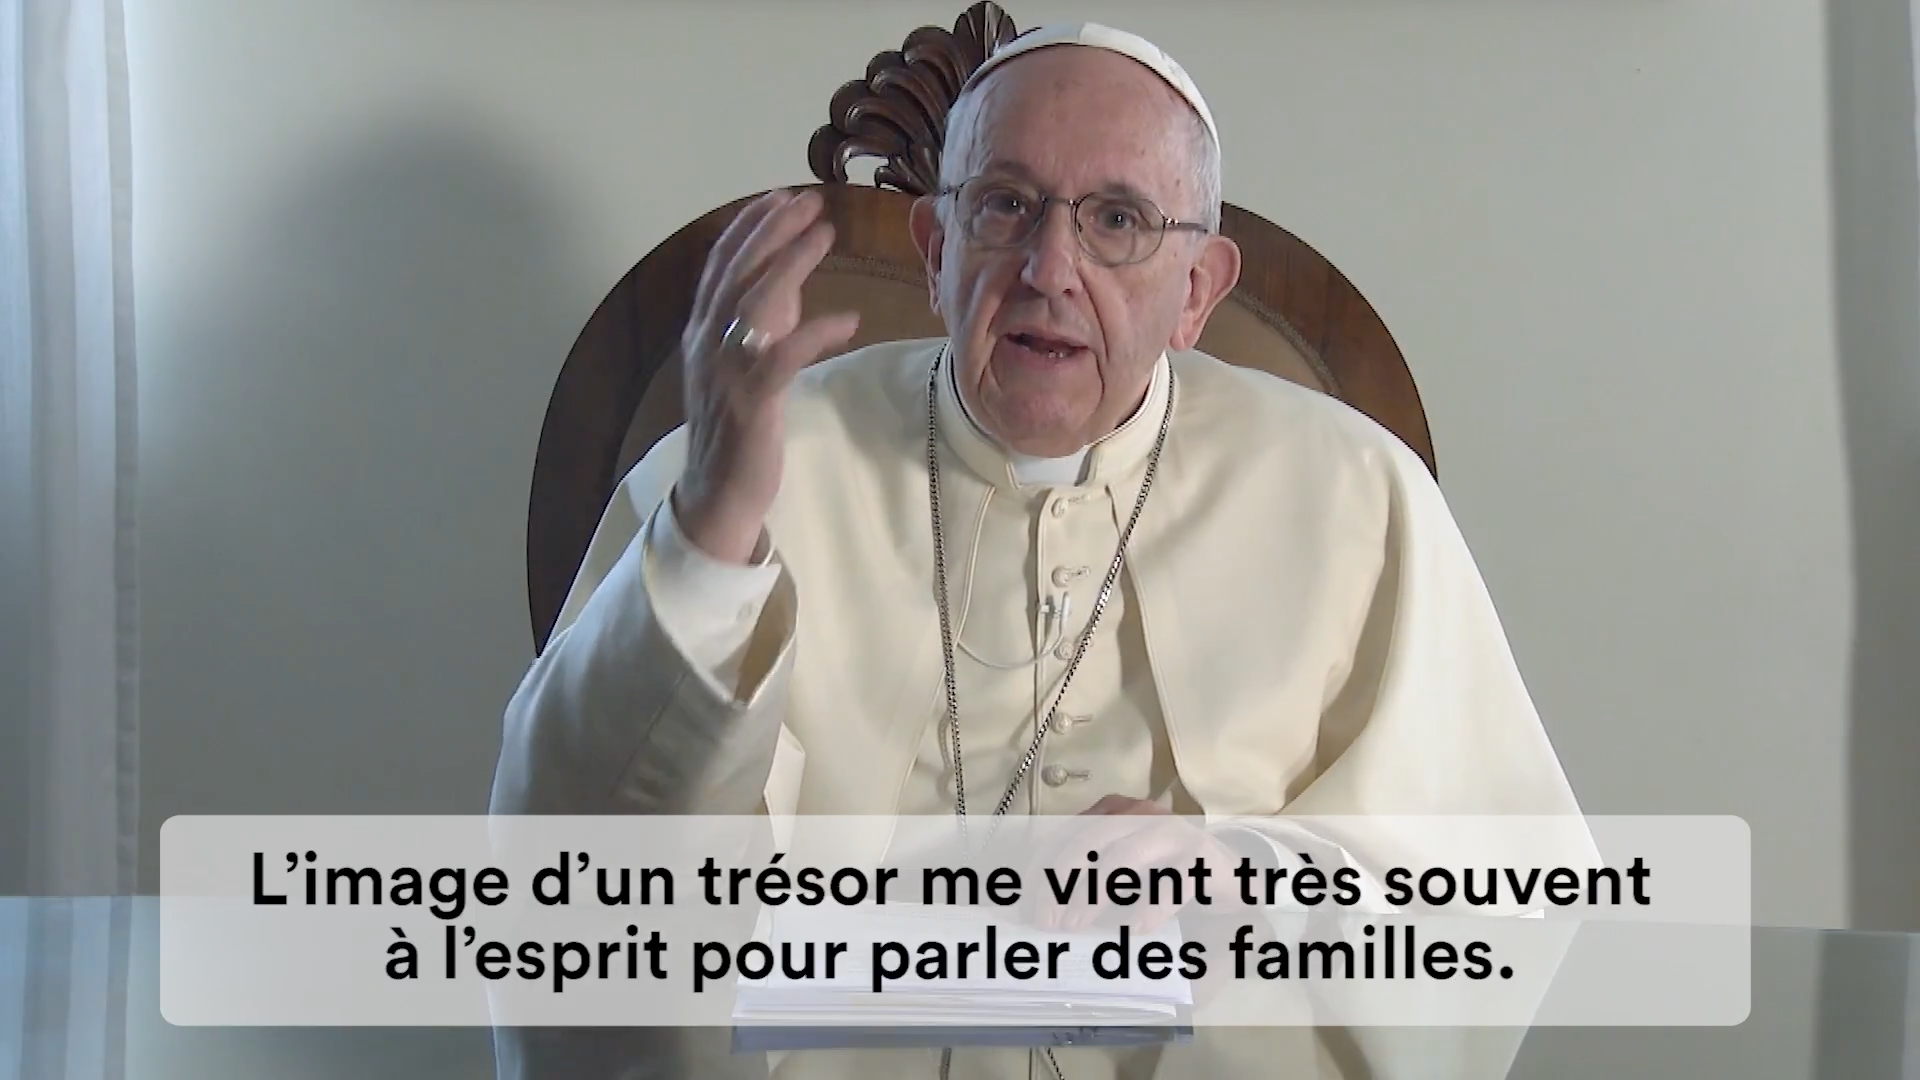 Capture @ La Vidéo du Pape, août 2018